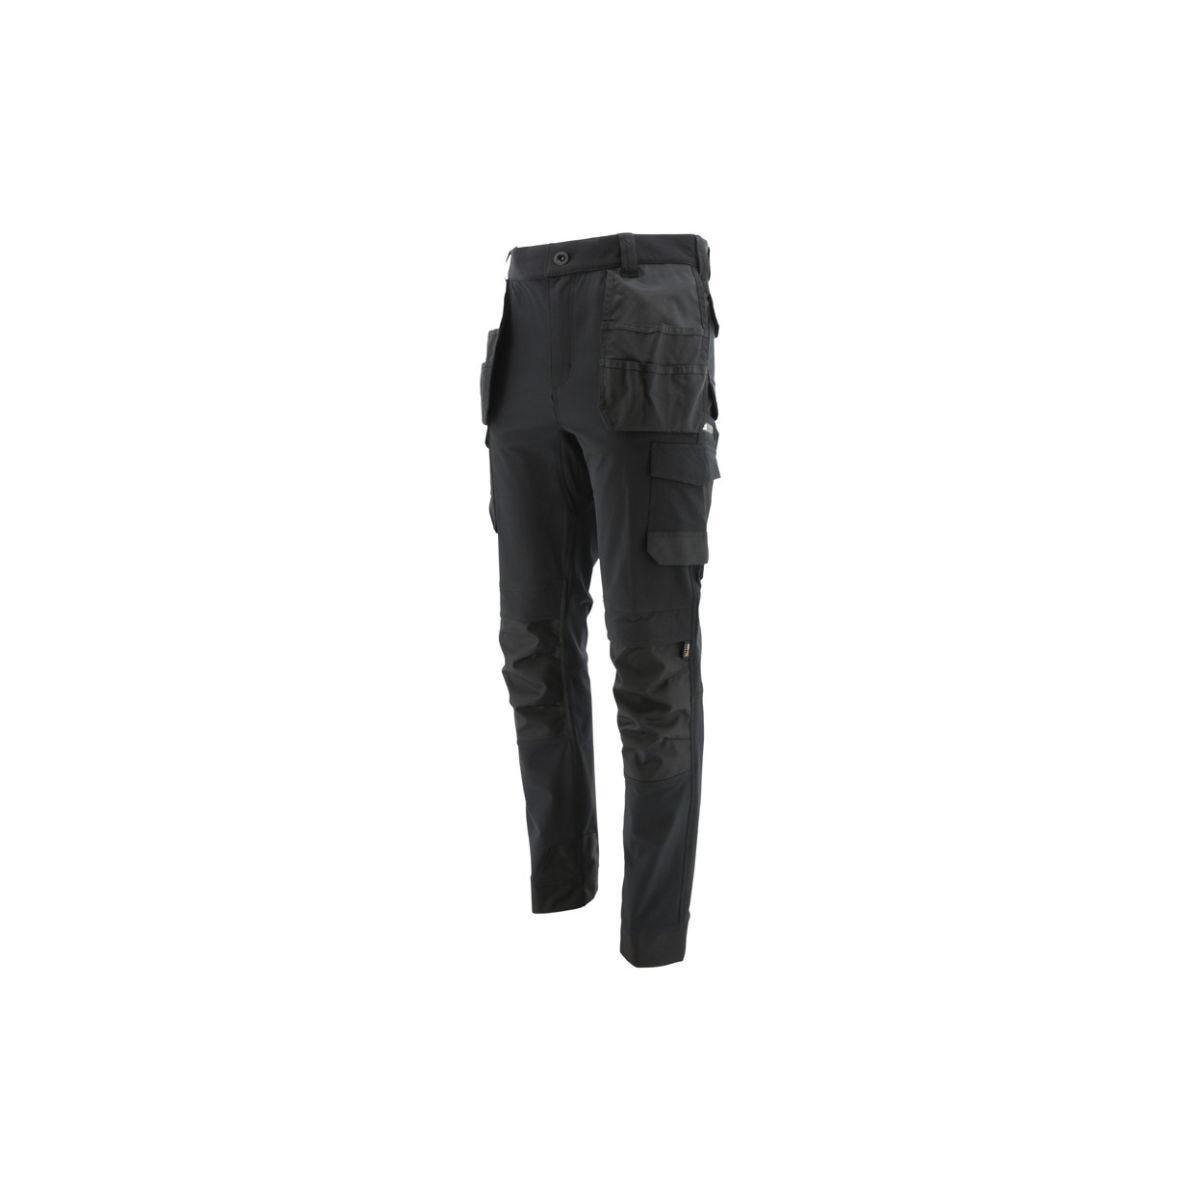 Pantalon de travail stretch technique noir - Caterpillar - Taille 48 0